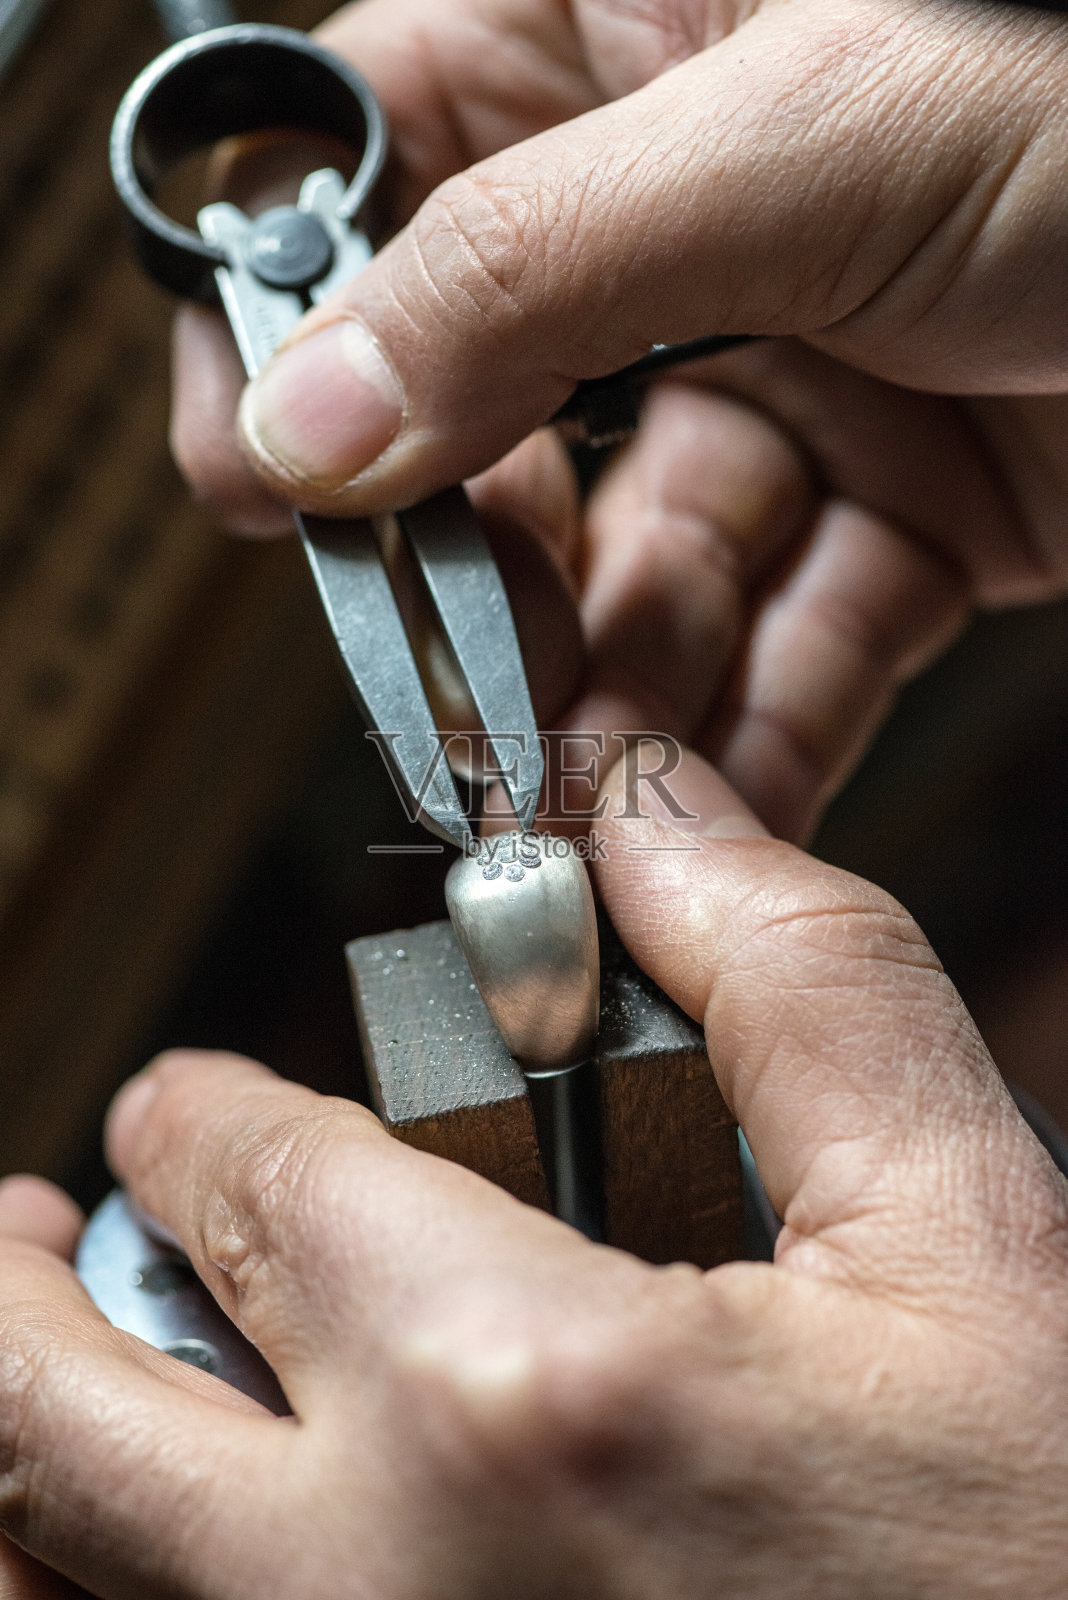 专业宝石镶嵌珠宝工艺实验室:检查戒指上的钻石照片摄影图片